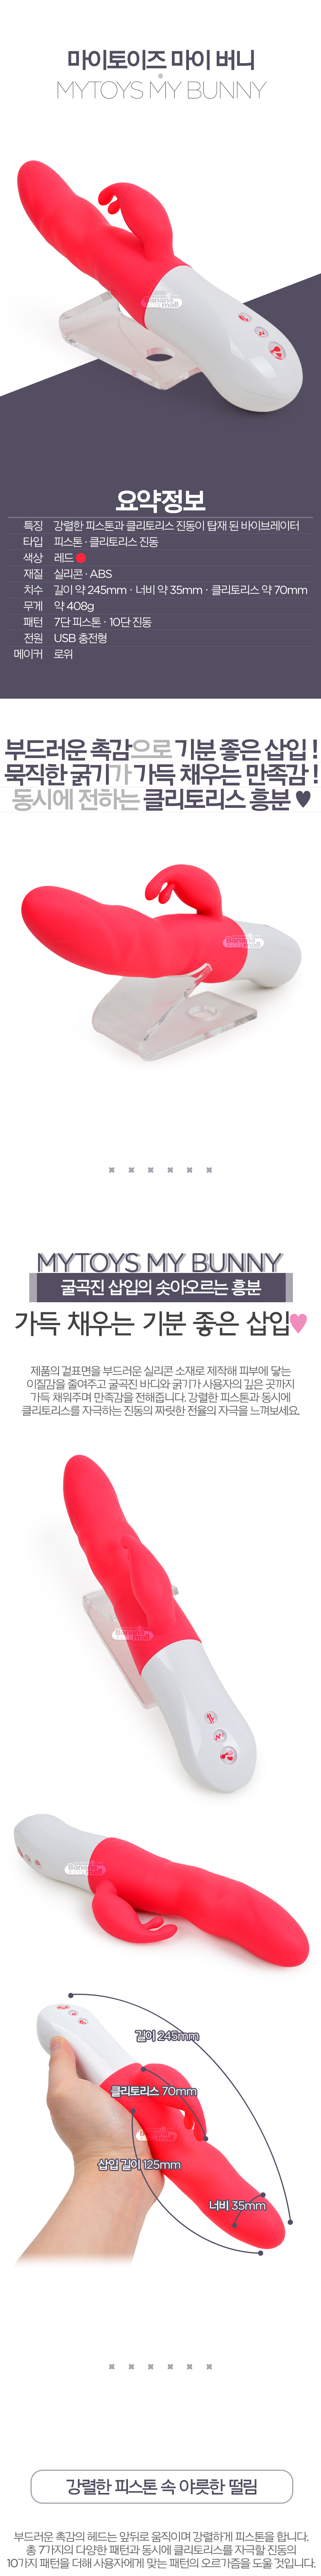 [7단 피스톤+10단 진동] 마이토이즈 마이 버니(MyToys My Bunny) - 로위(MT-MI-002-IR) (LOW)